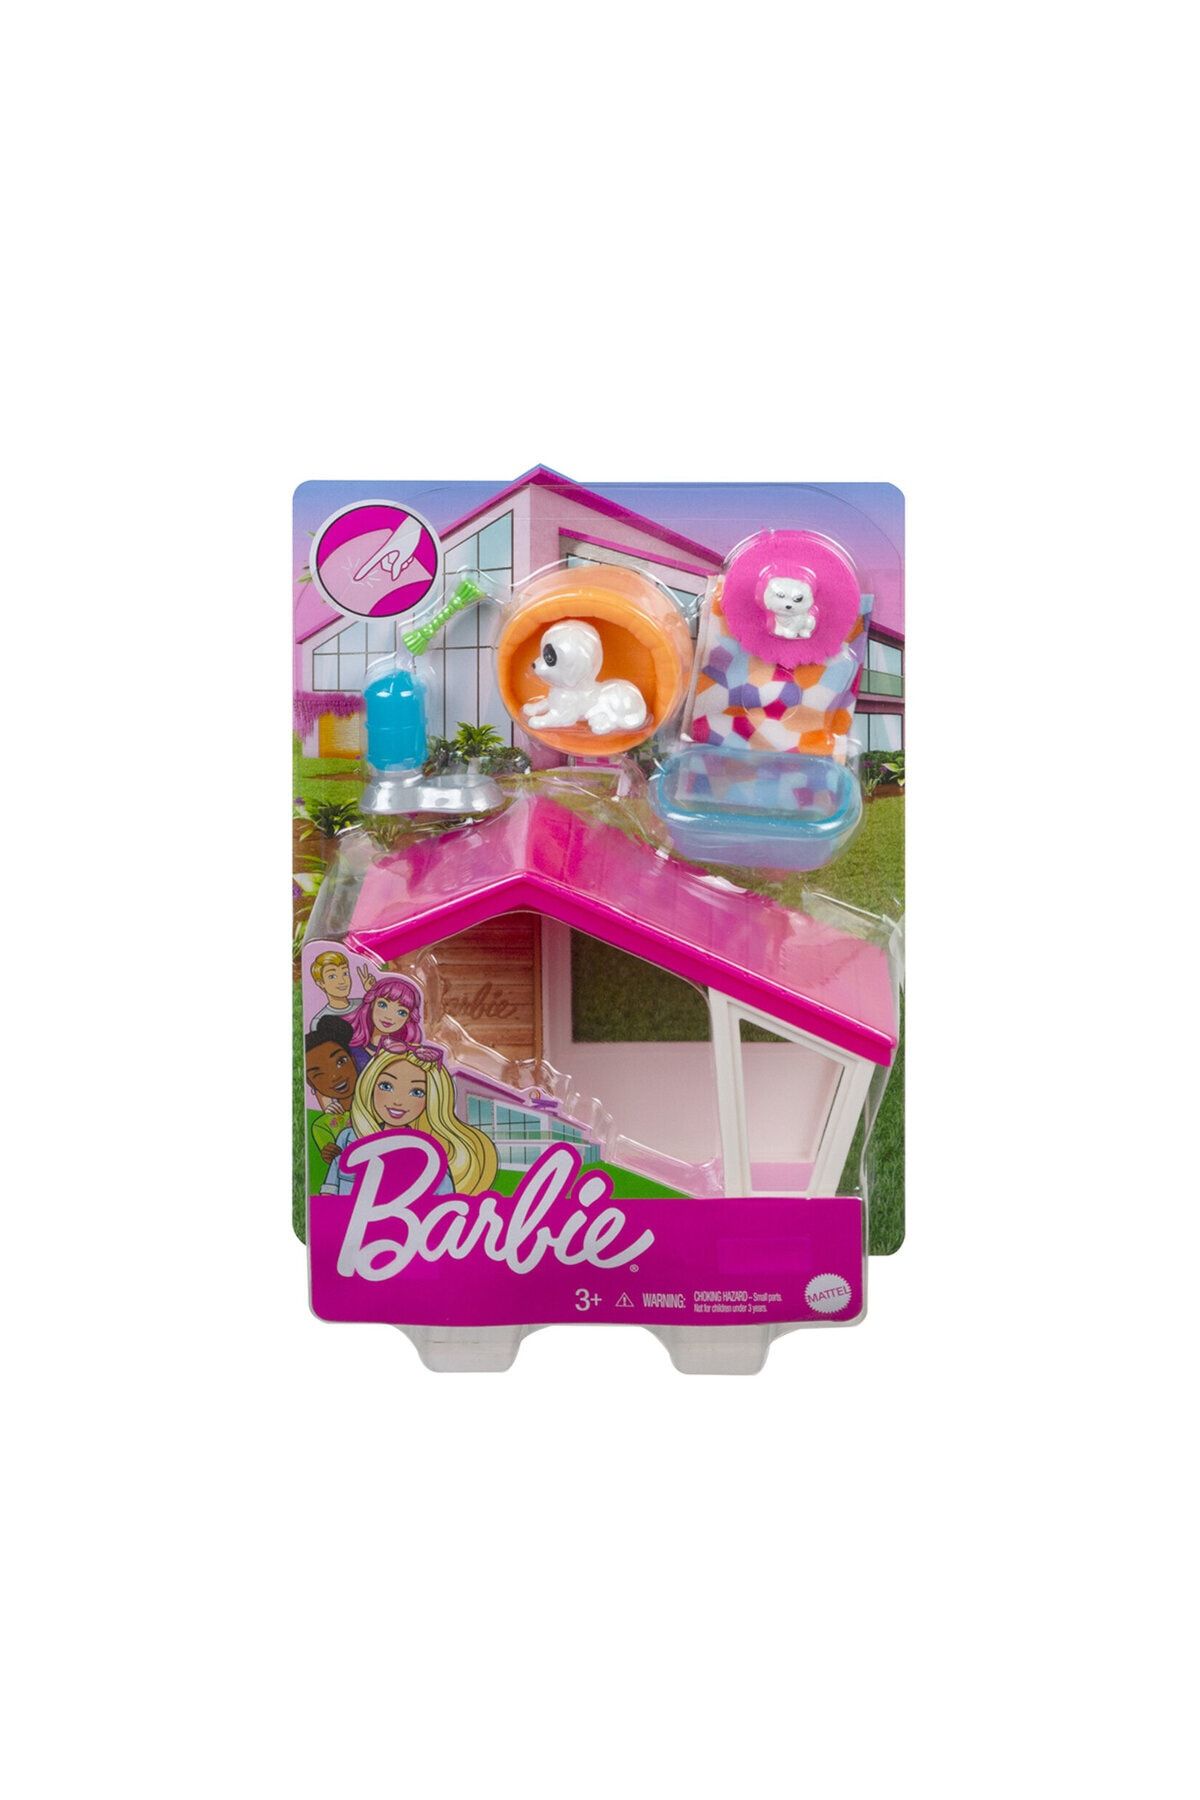 Barbie Barbienin Ev Dekorasyonu Oyun Setleri